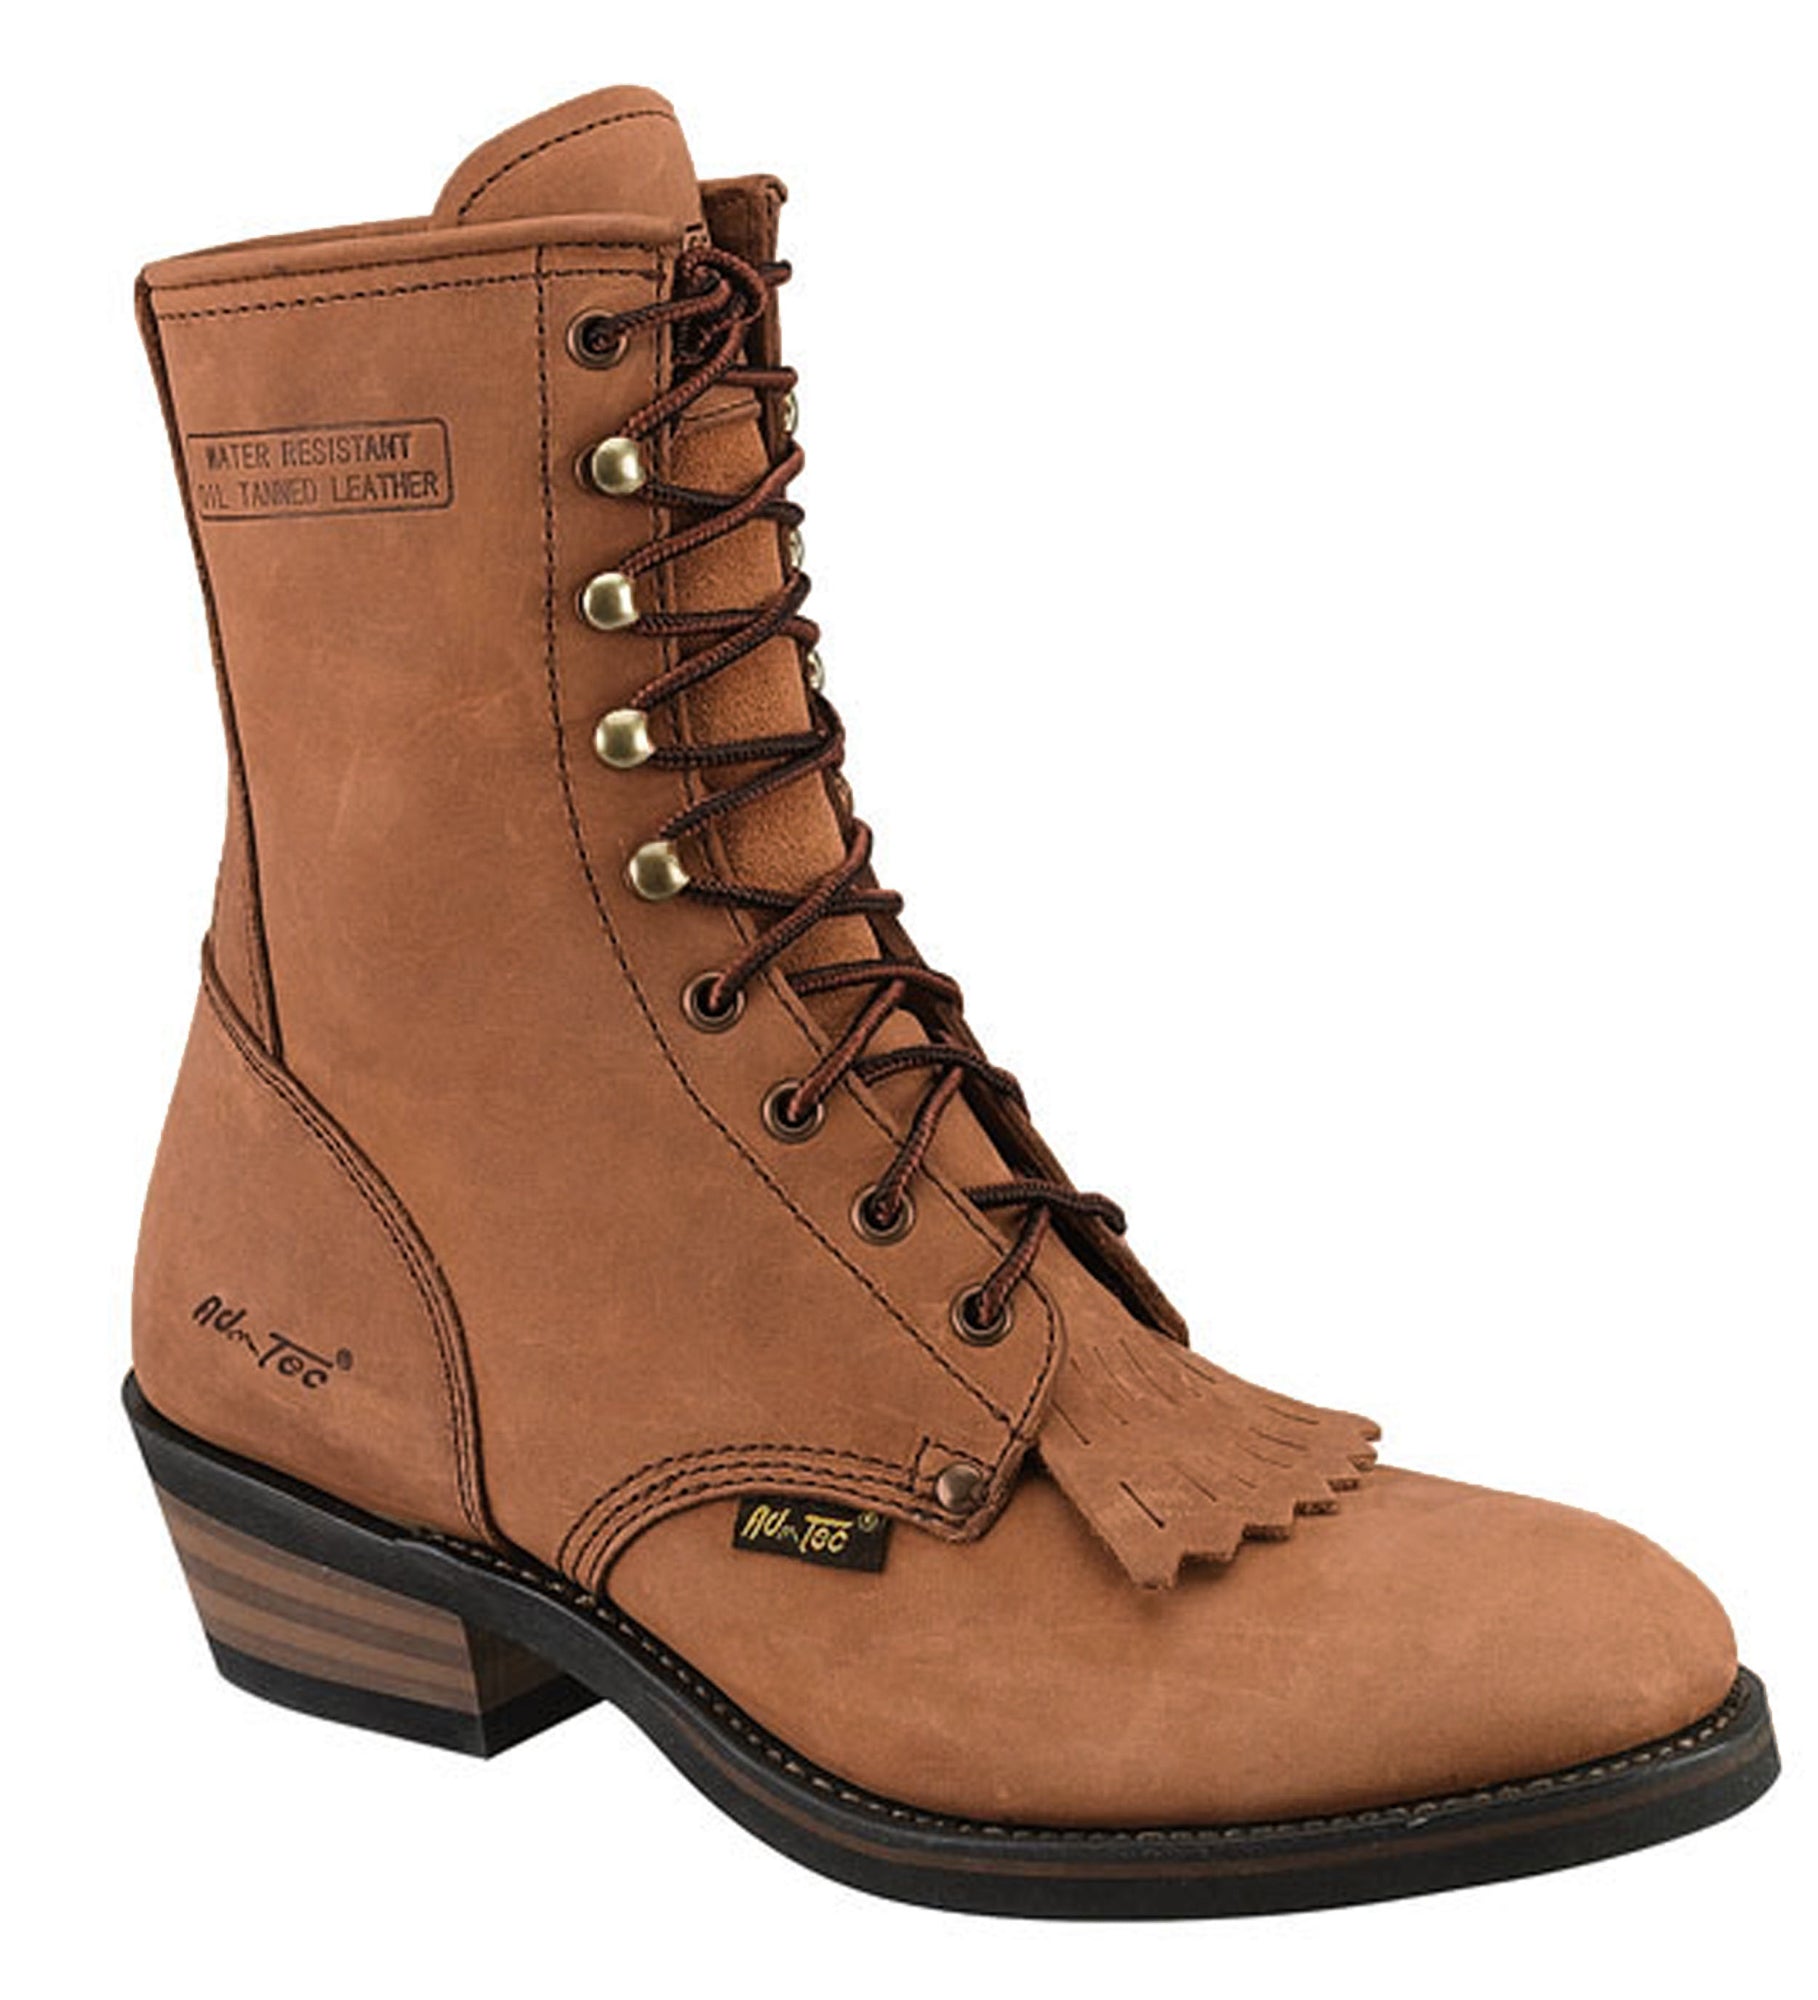 ad tec women's boots